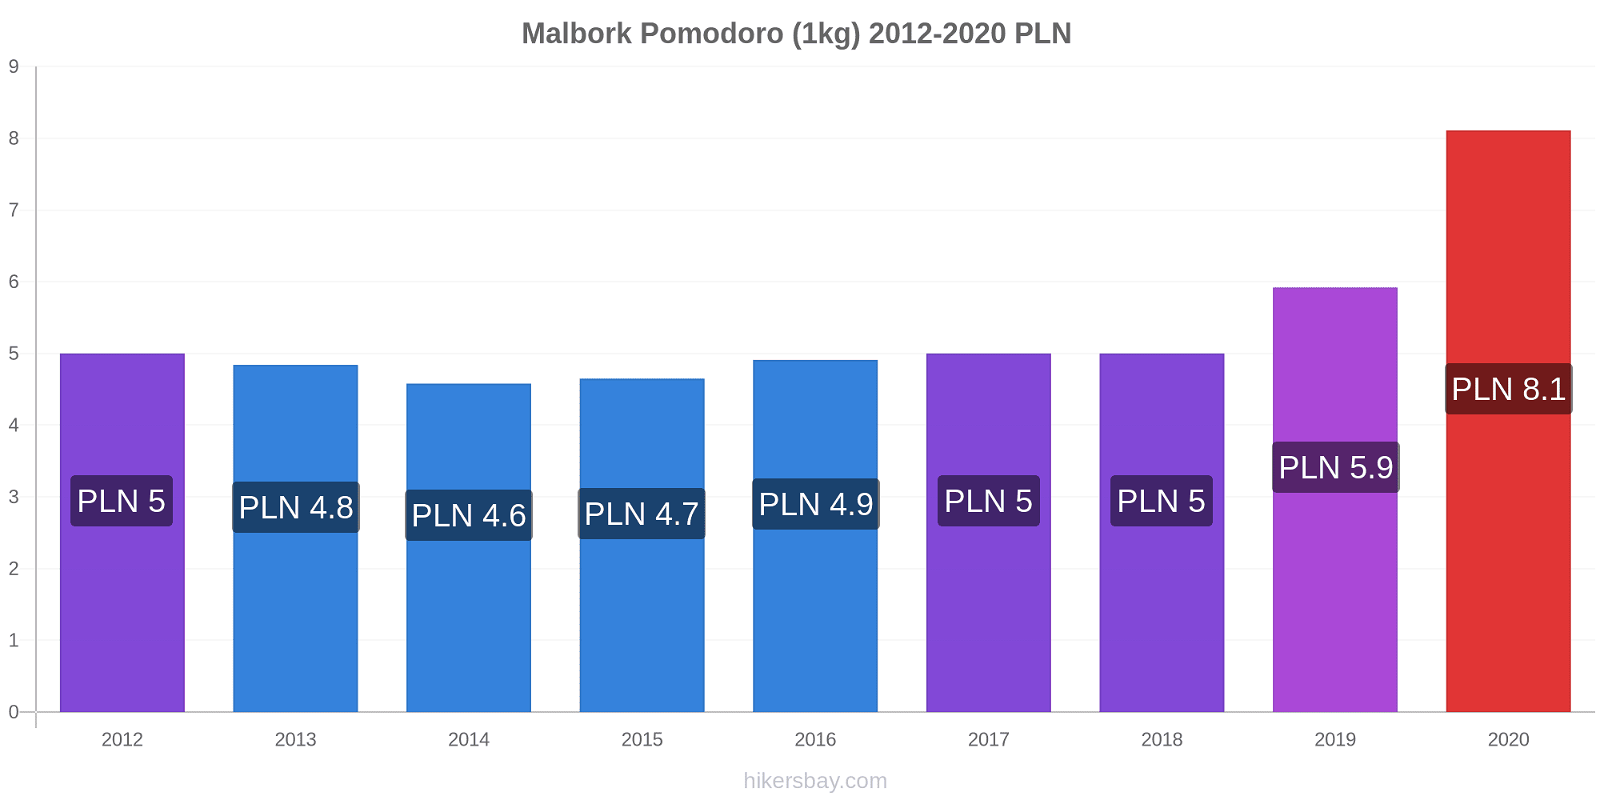 Malbork variazioni di prezzo Pomodoro (1kg) hikersbay.com